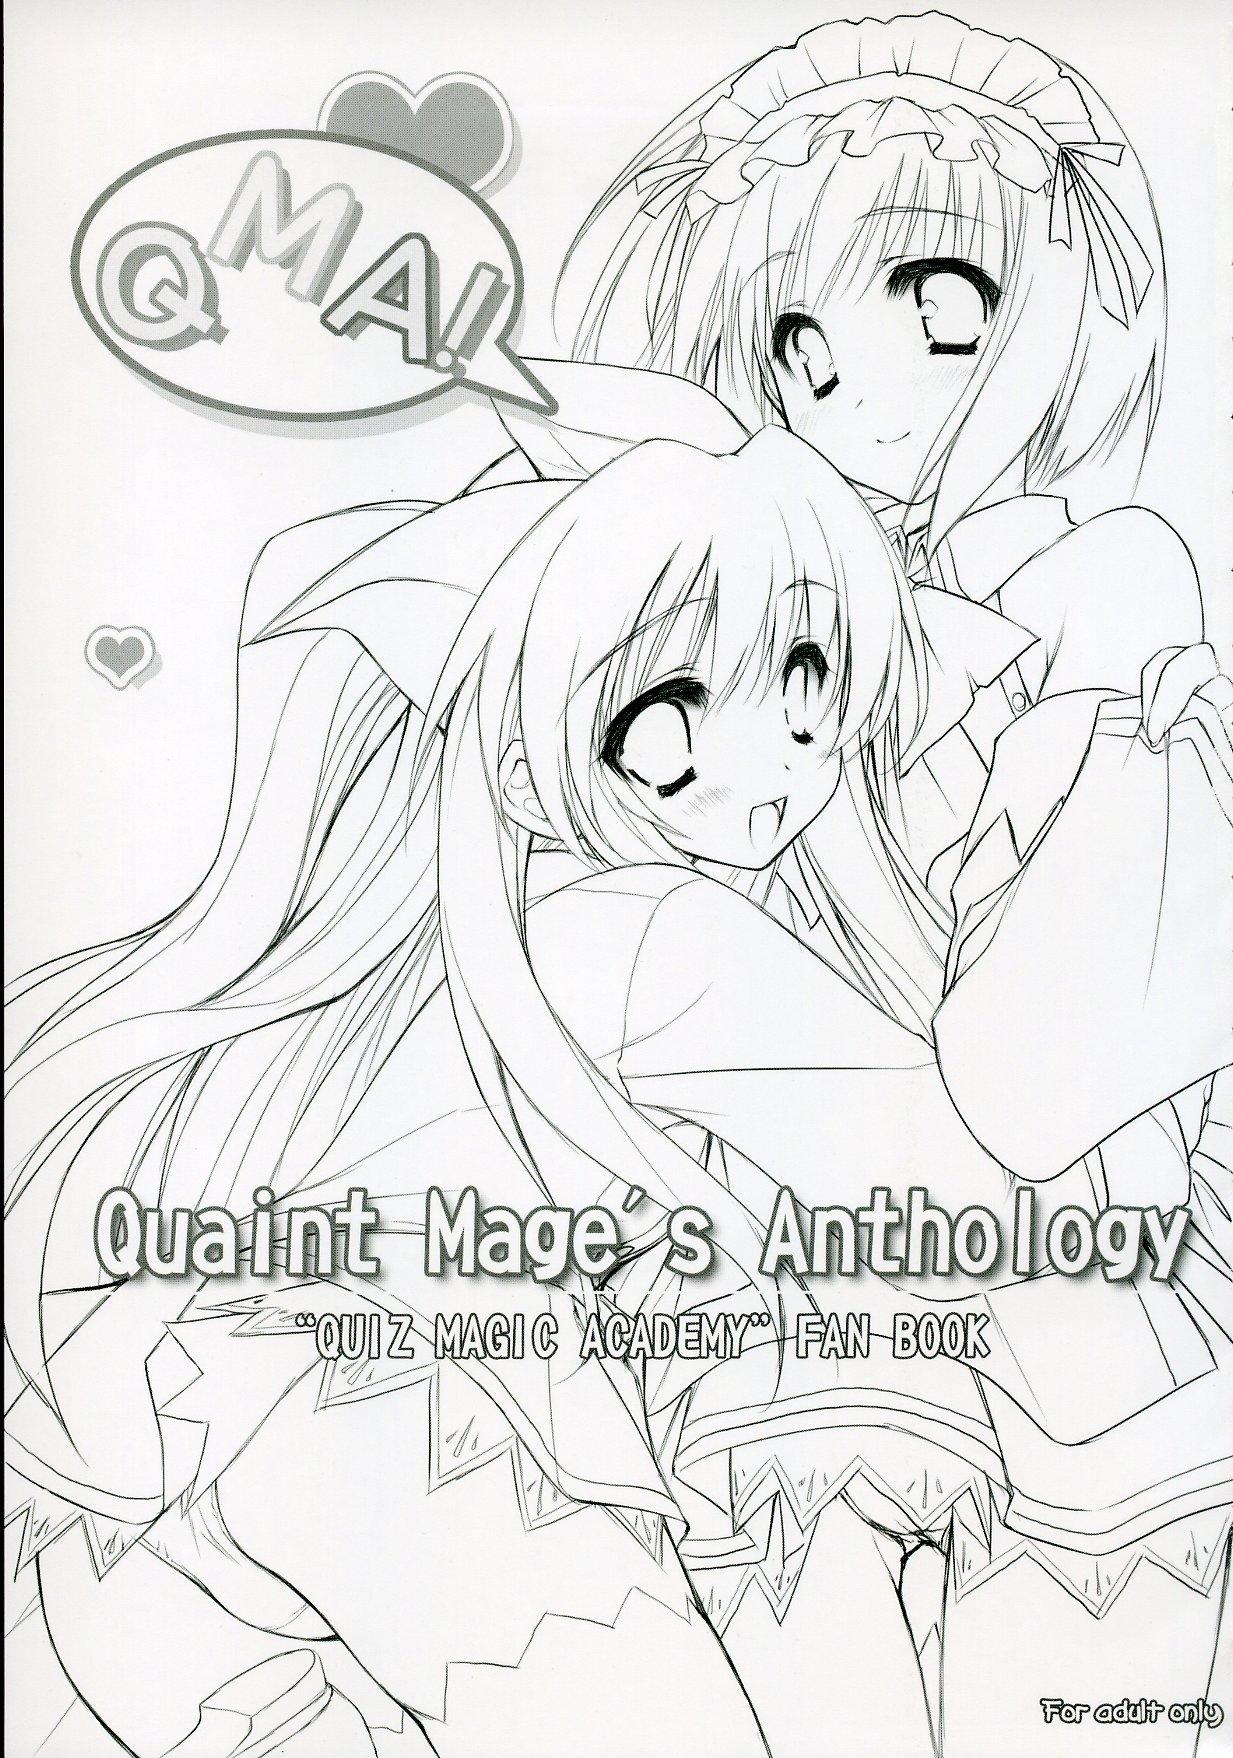 Quaint Mage's Anthology 2